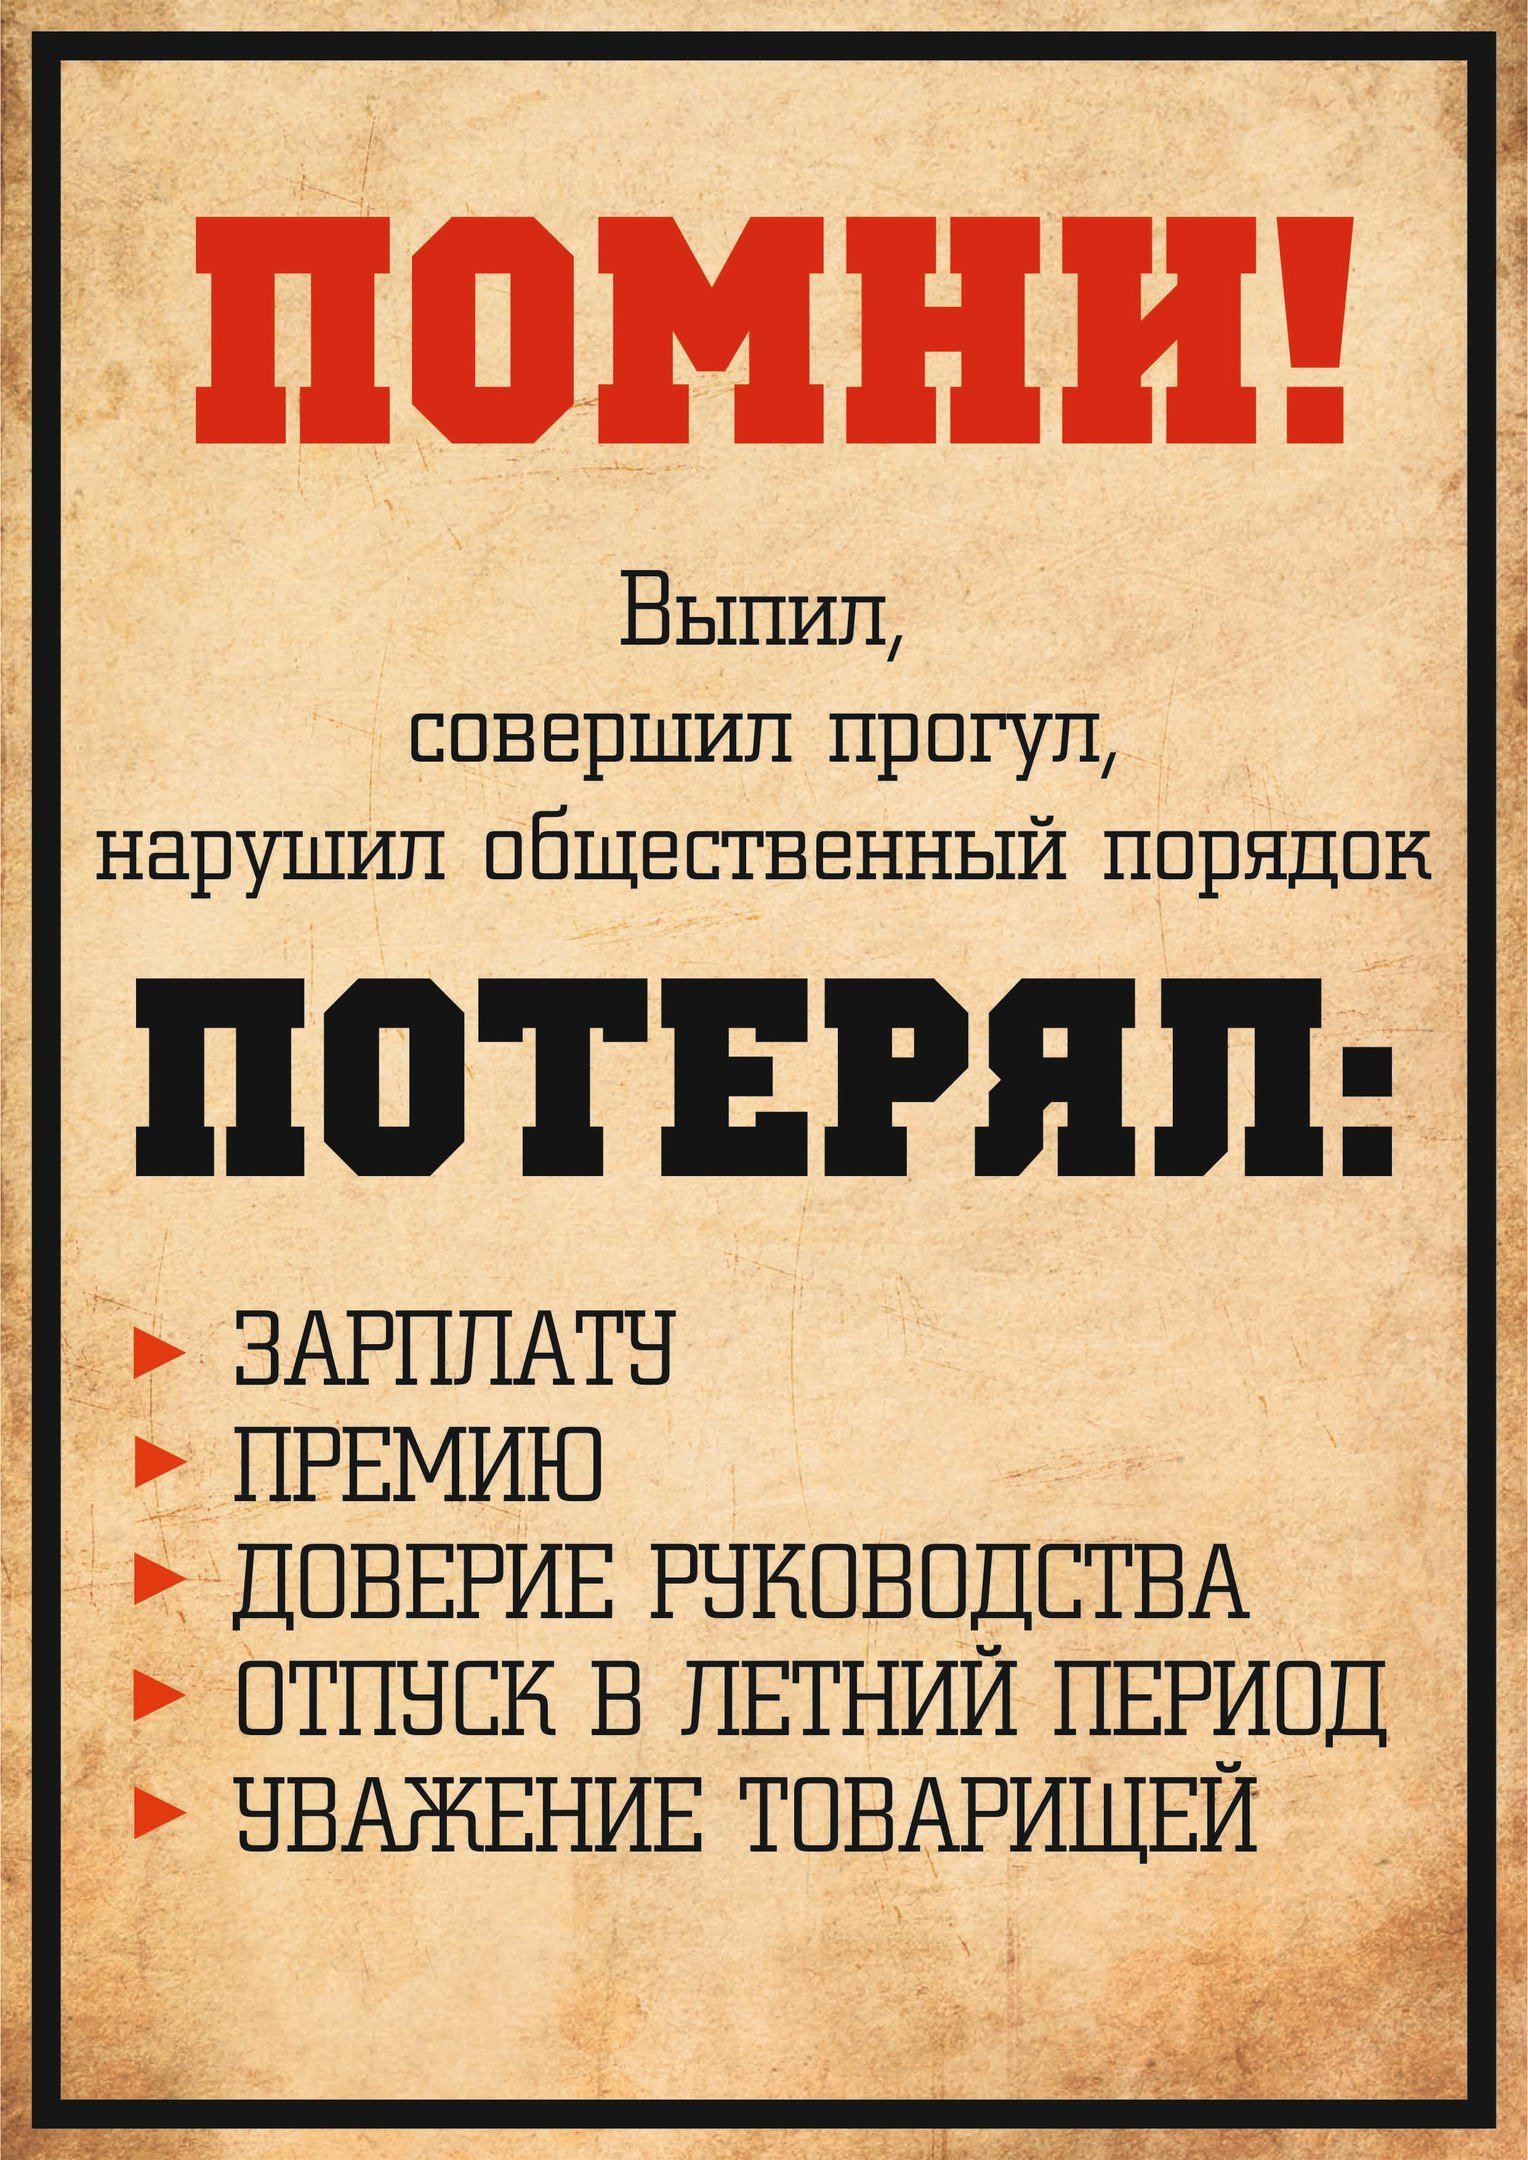 Плакат если не загружен работой. Советские лозунги. Прикольные плакаты про работу. Смешные советские плакаты. Советский плакат Помни.